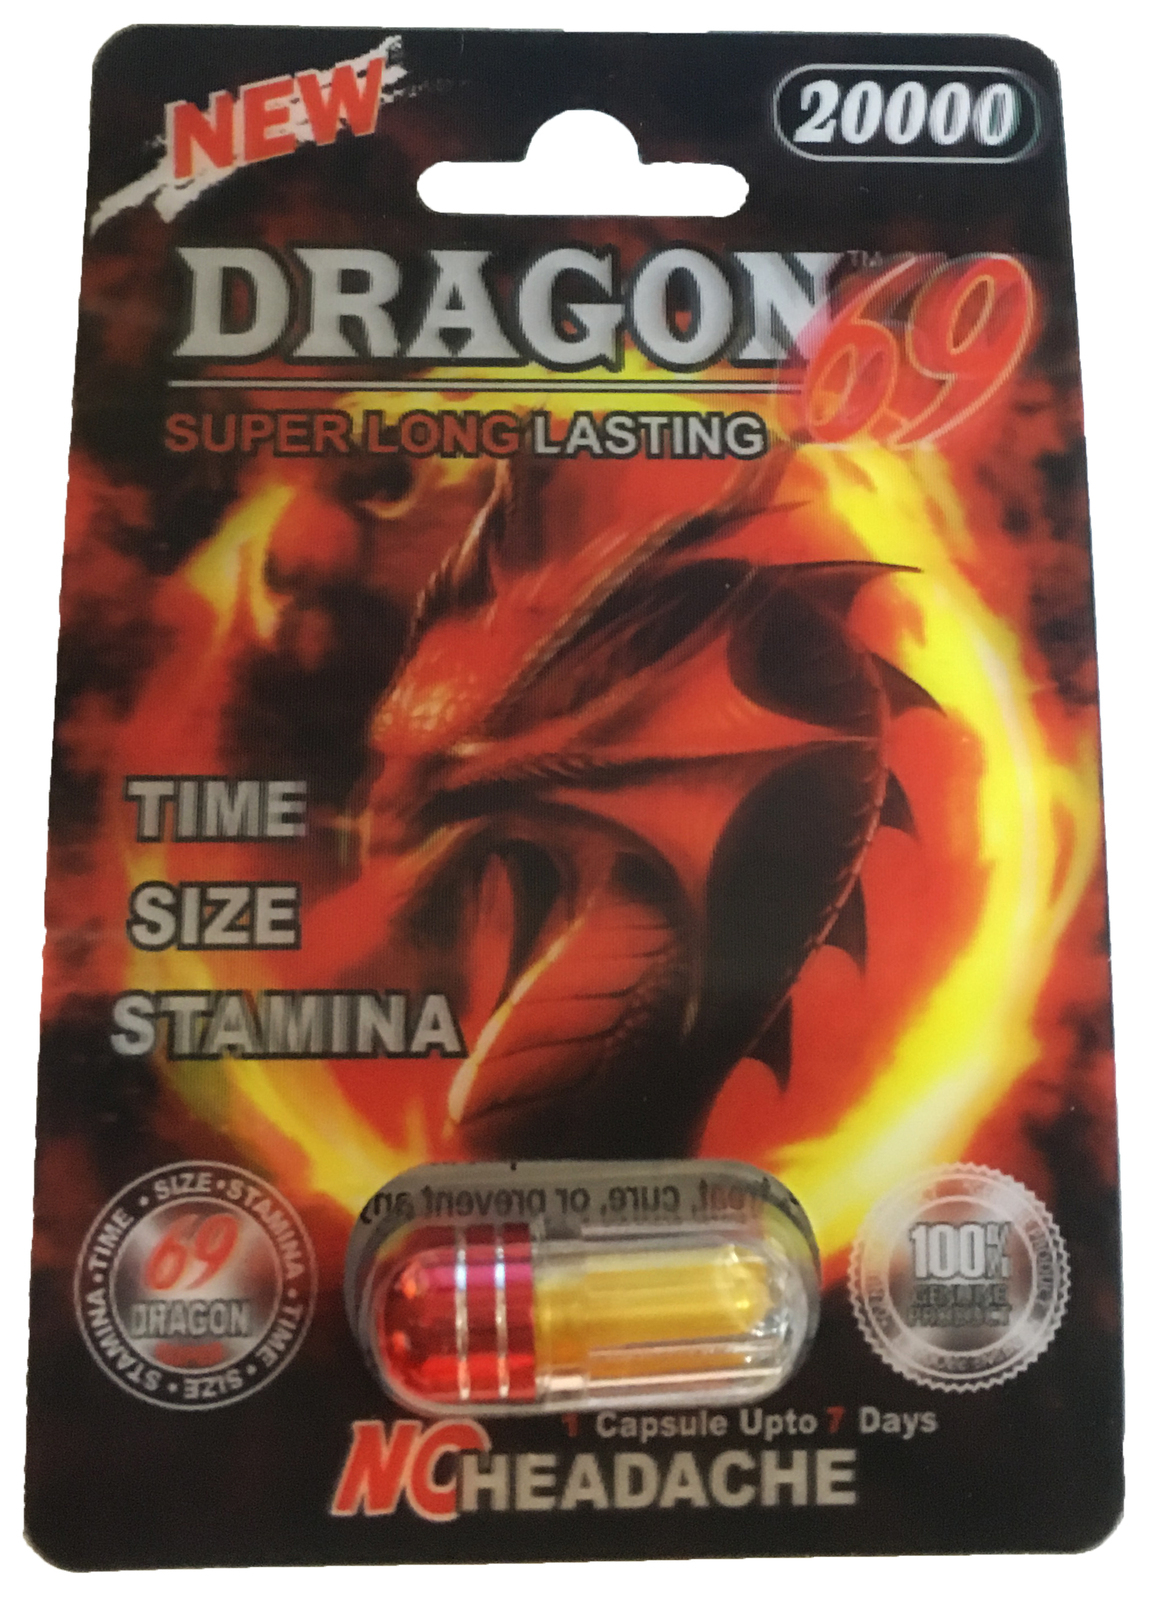 Dragon 69 20000 3D - 10 Pills Male Enhancement Pill - Fast US Shipping - $56.00